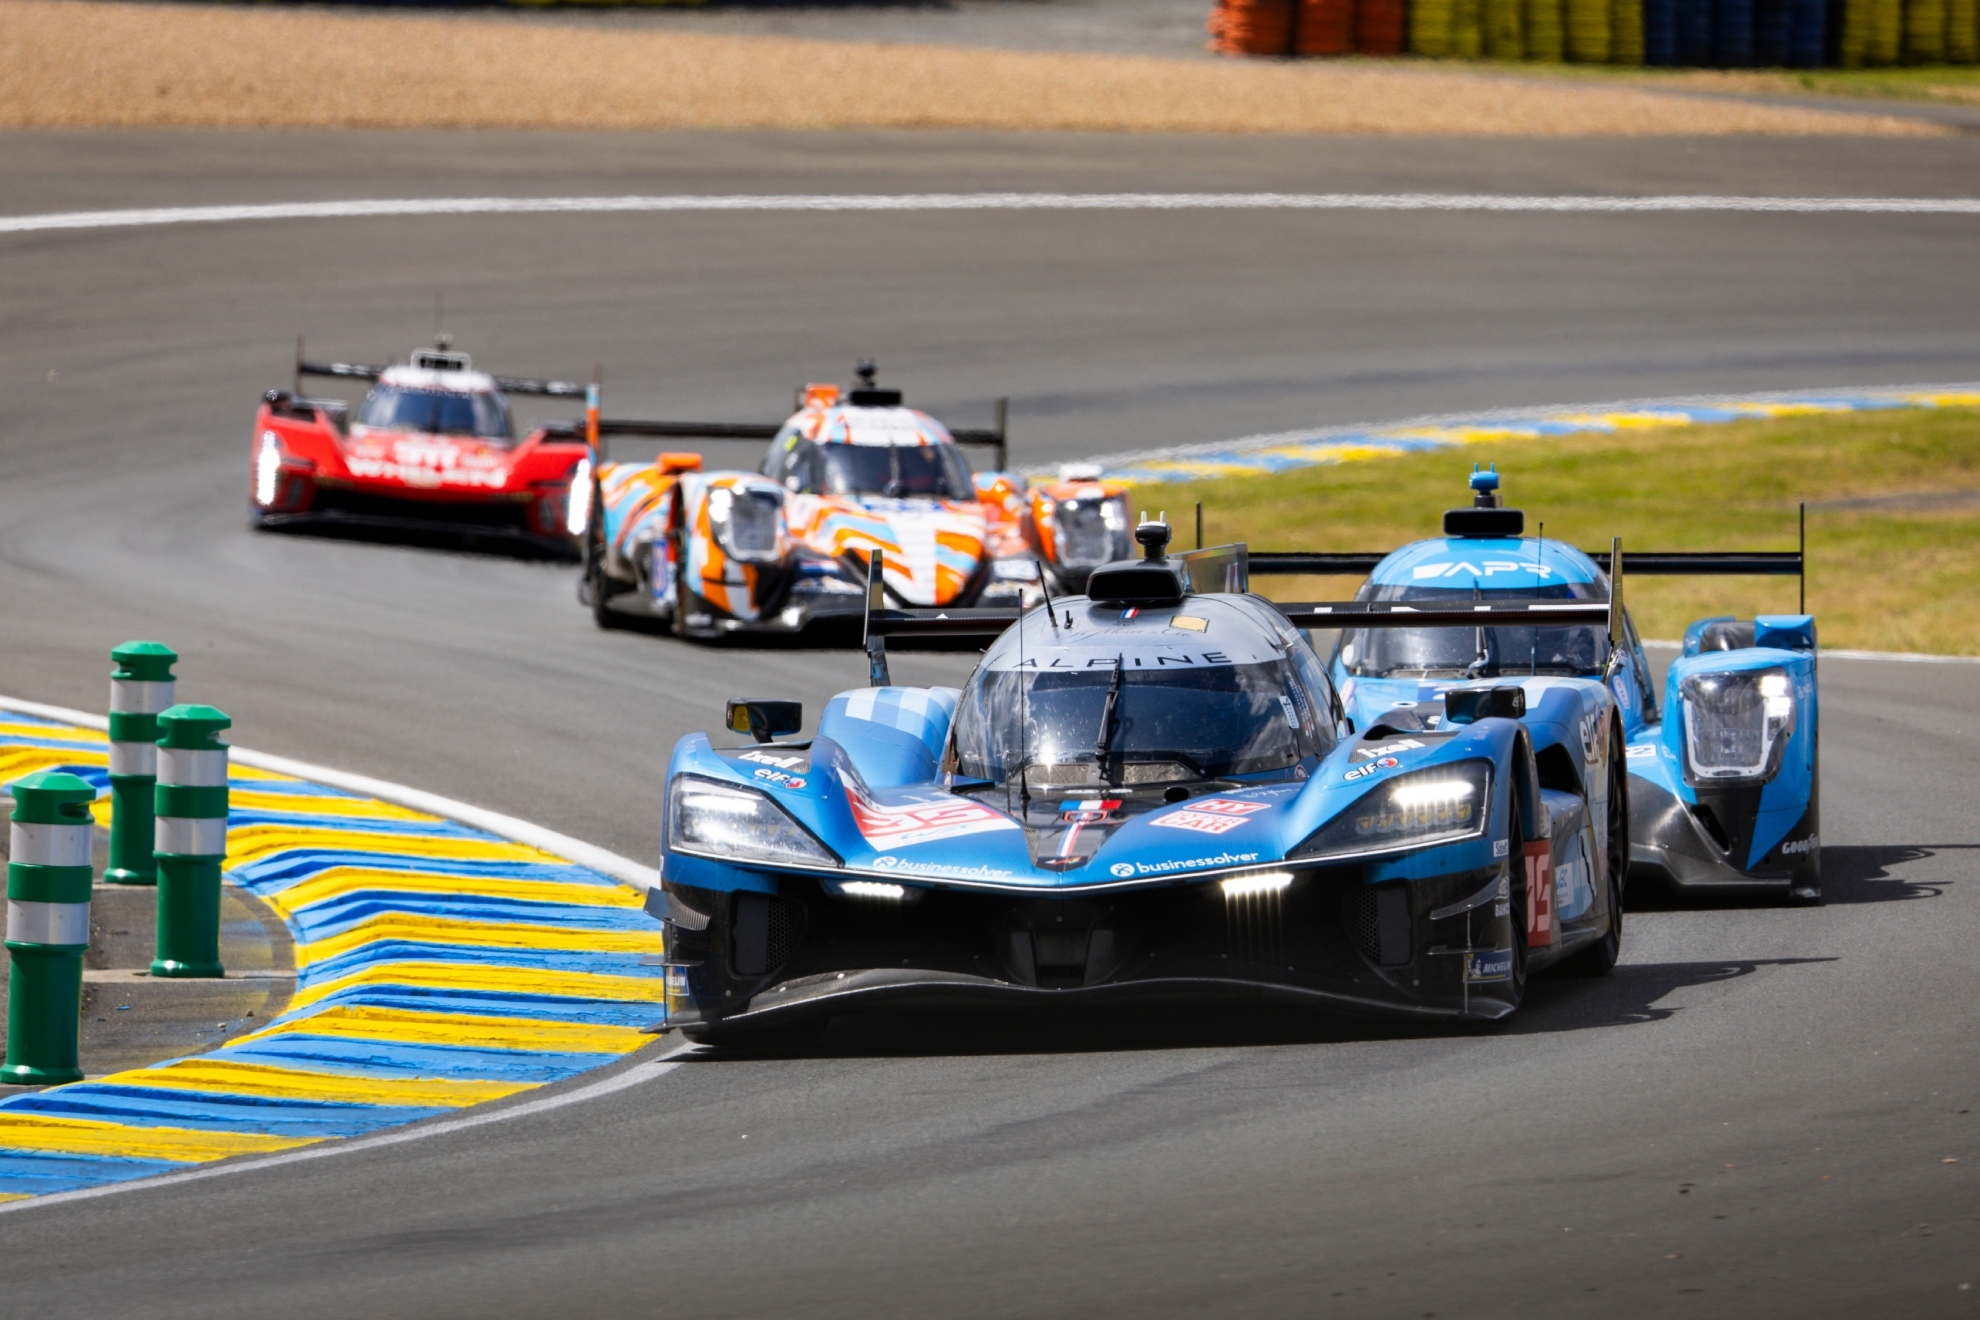 Hasta 23 coches de la categor�a reina luchar�n por el triunfo absoluto en Le Mans.